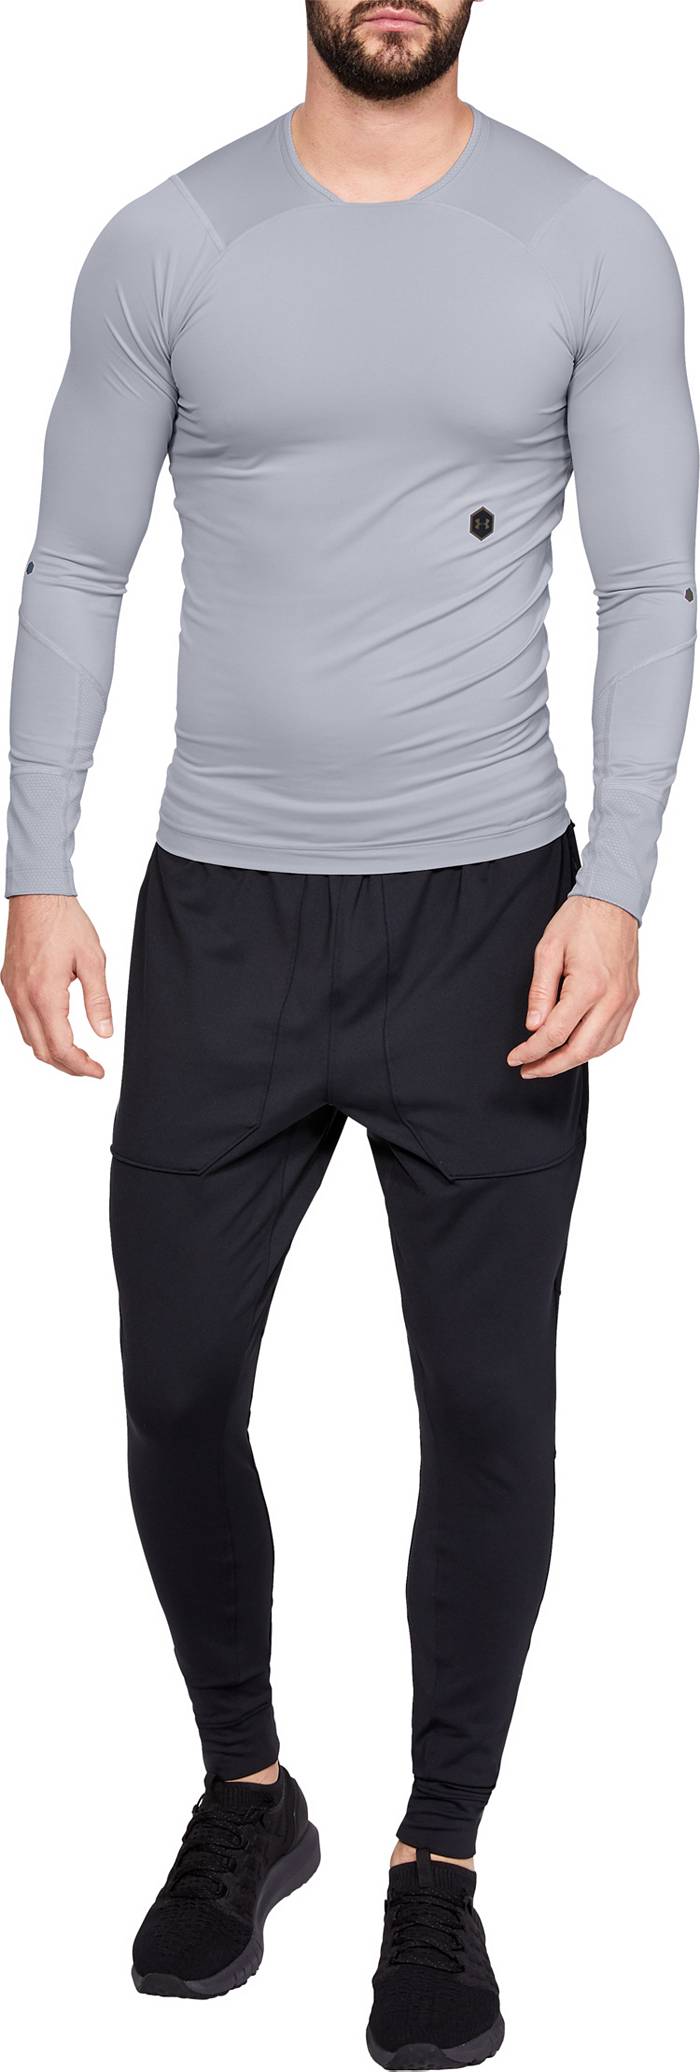 Top Legging Men's 4 Pack Regular Fit 3/4 Sleeve Baseball T-Shirt -Cotton Raglan Jersey S-5xl